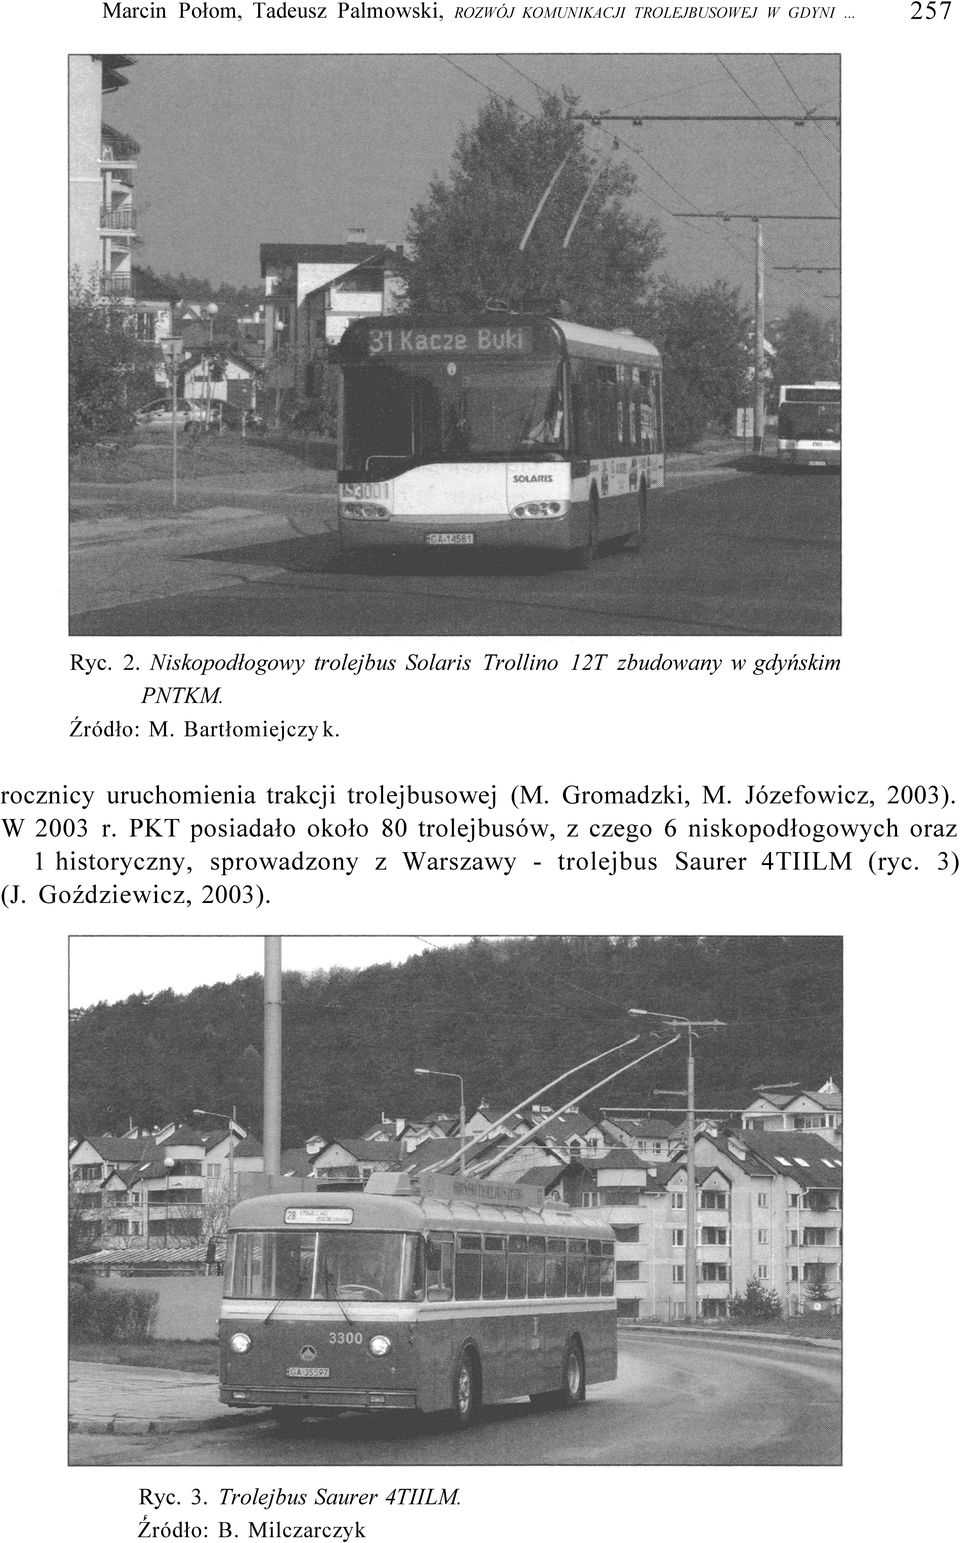 ocznicy uuchomienia takcji tolejbusowej (M. Gomadzki, M. Józefowicz, 2003). W 2003.